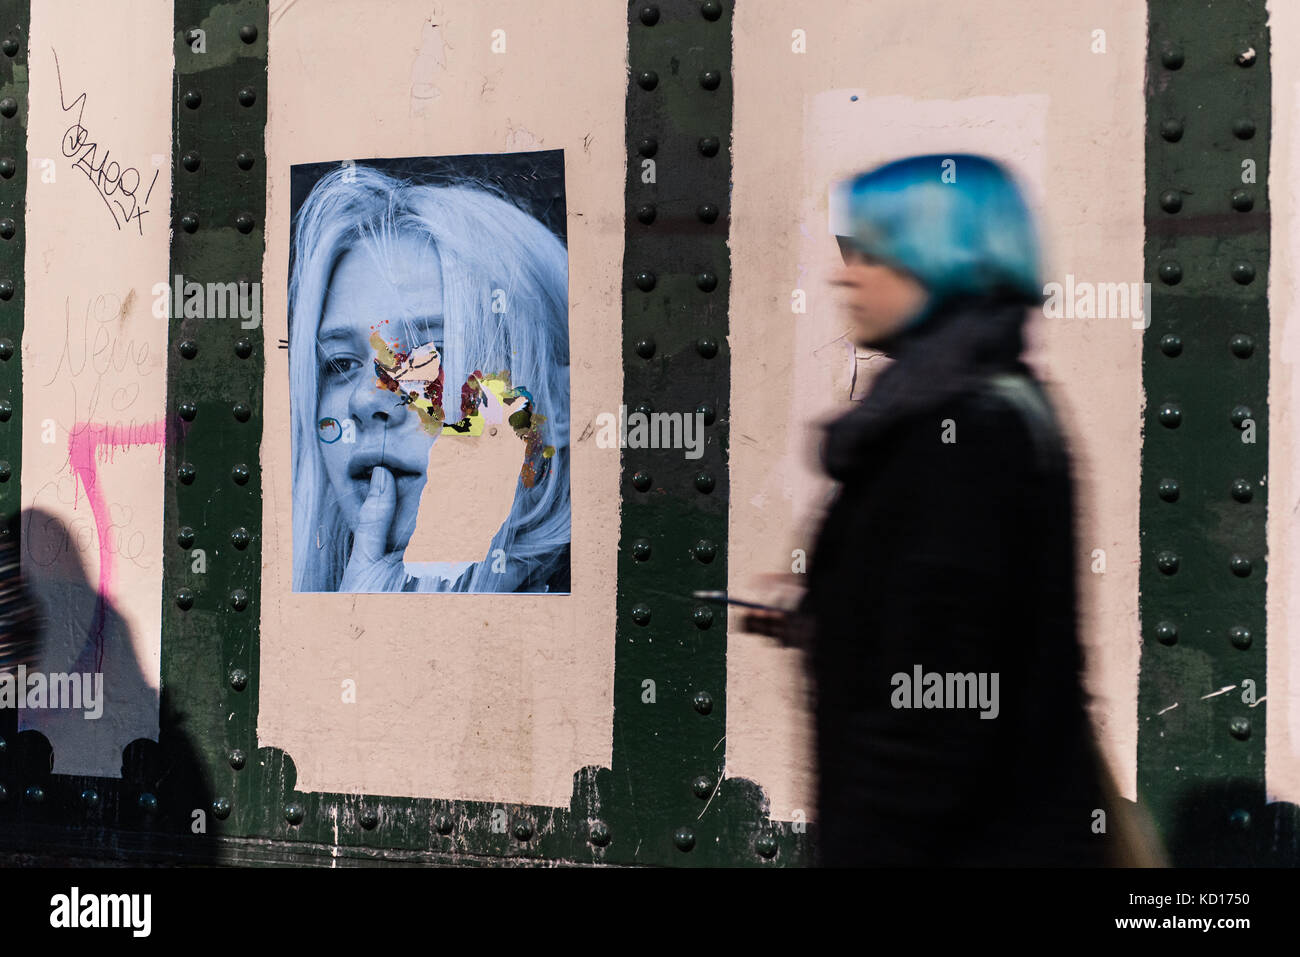 Femme floue avec des cheveux bleus en passant devant un mur avec le street art photographie murale portrait de jeune enfant à Brick Lane, Shoreditch, East London, UK Banque D'Images